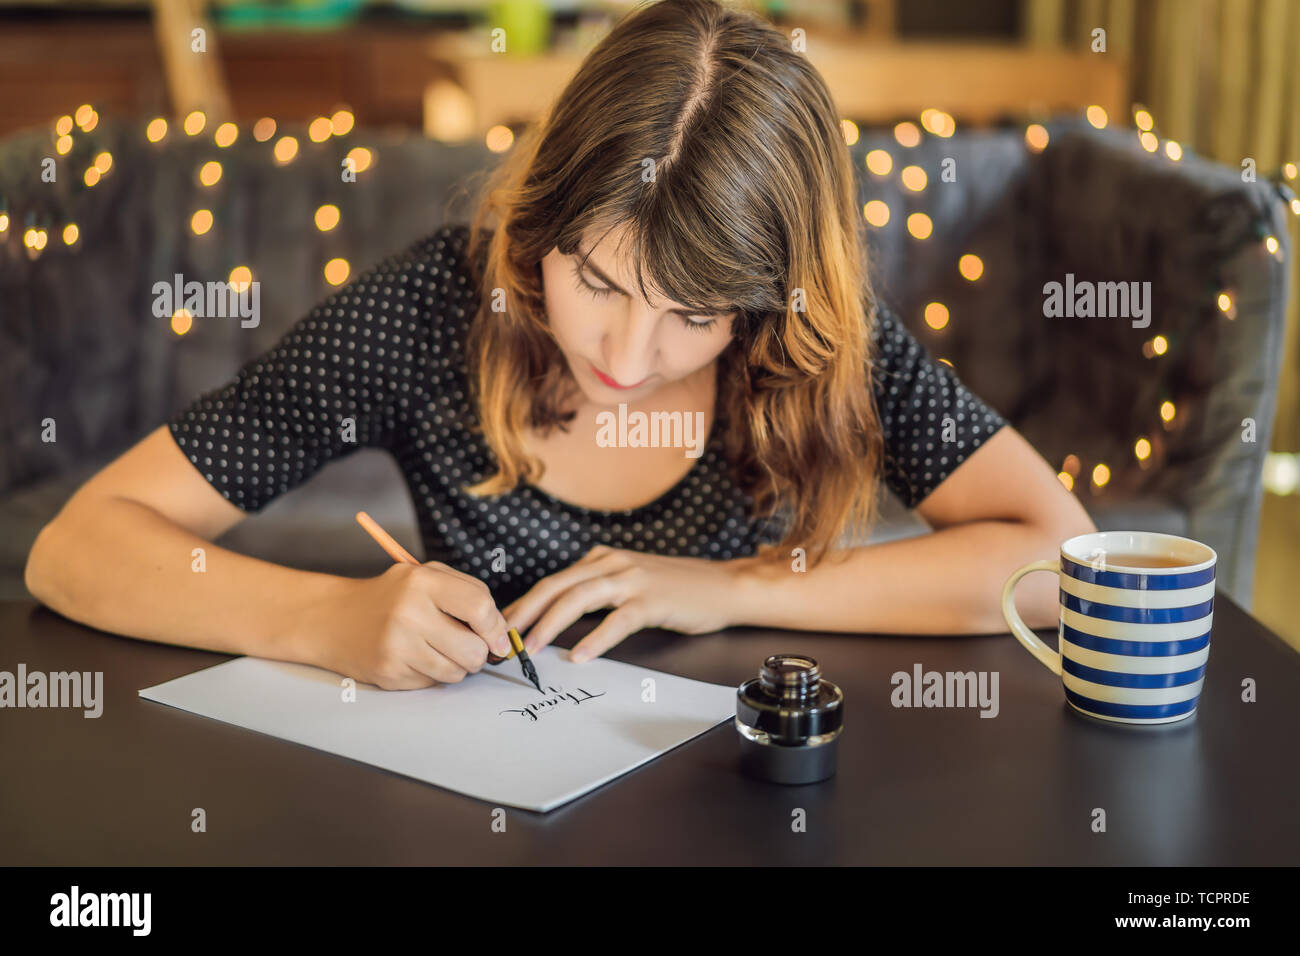 La ringrazio. Calligrapher giovane donna scrive una frase sul libro bianco. Inscrivendo ornamentali in lettere decorate. La calligrafia, graphic design, scritte Foto Stock